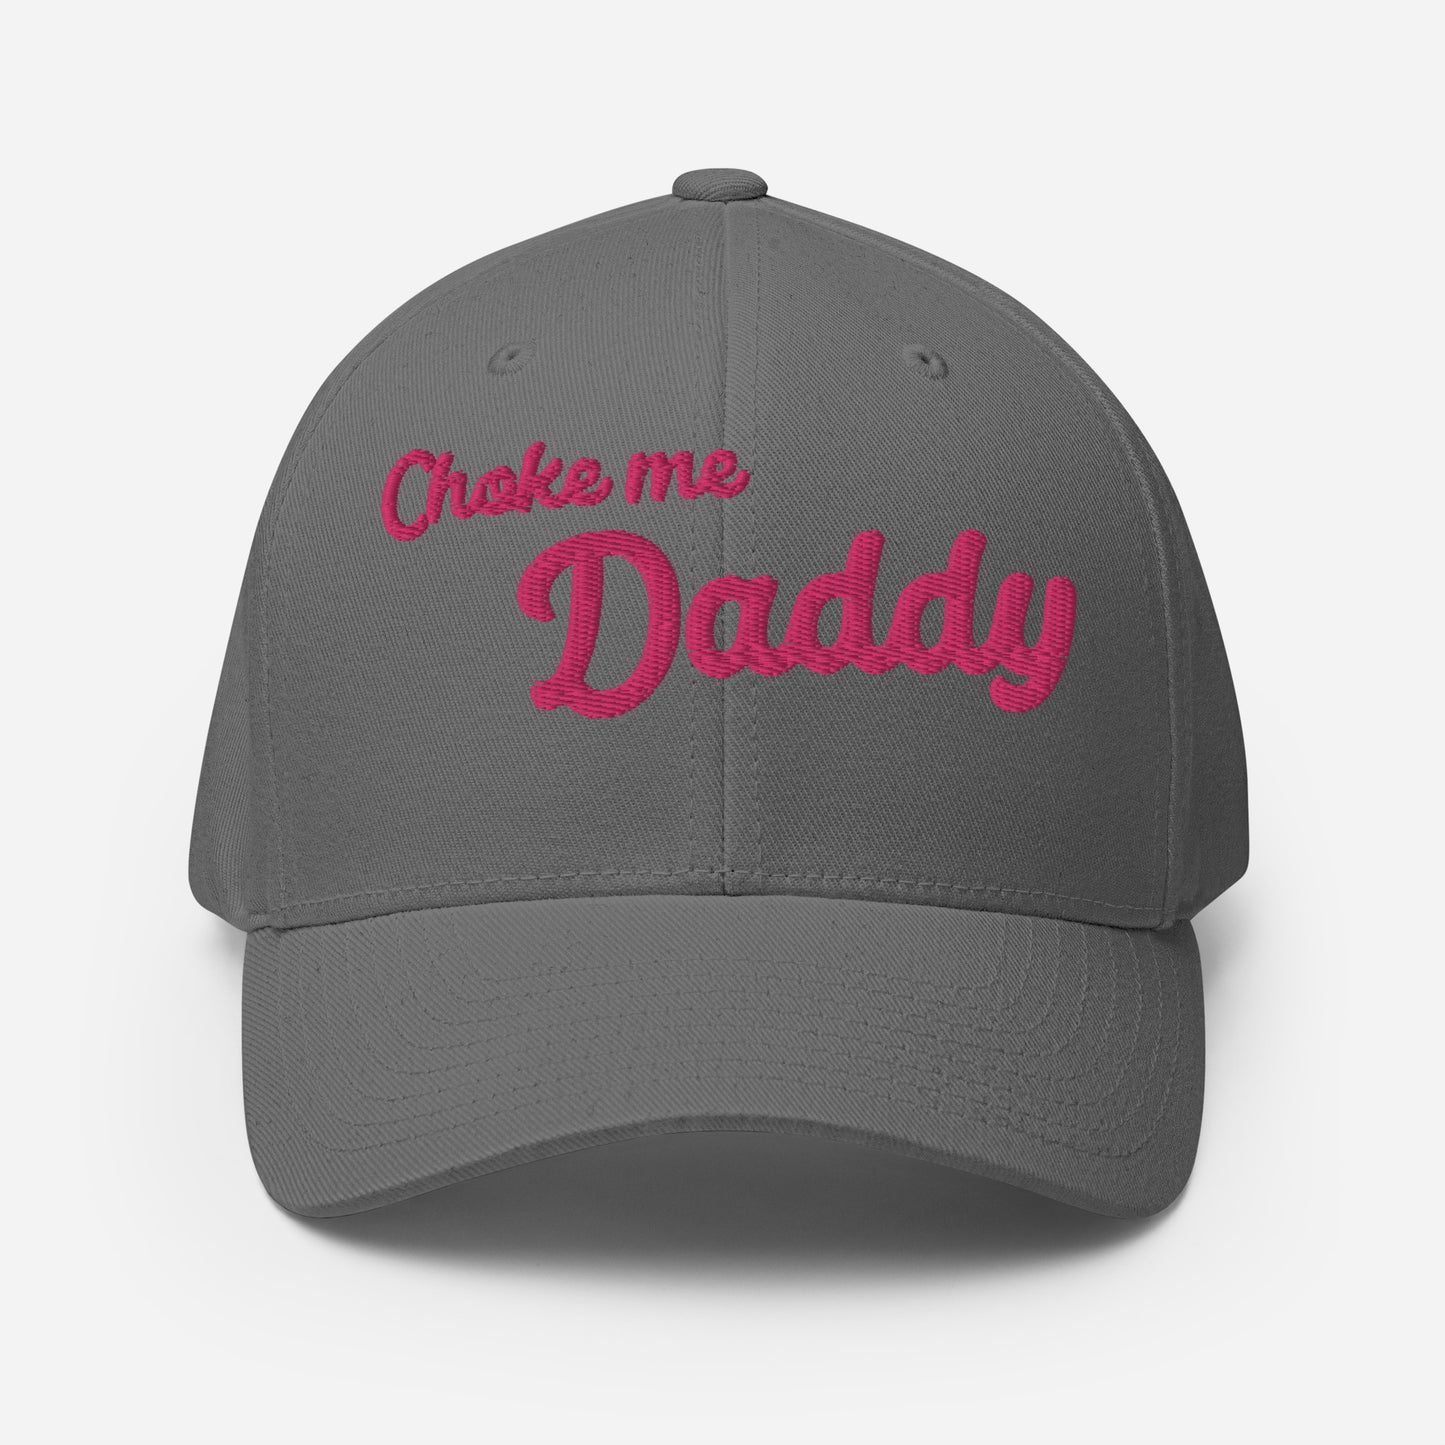 Pop Culture | Choke Me Daddy | Structured Cap